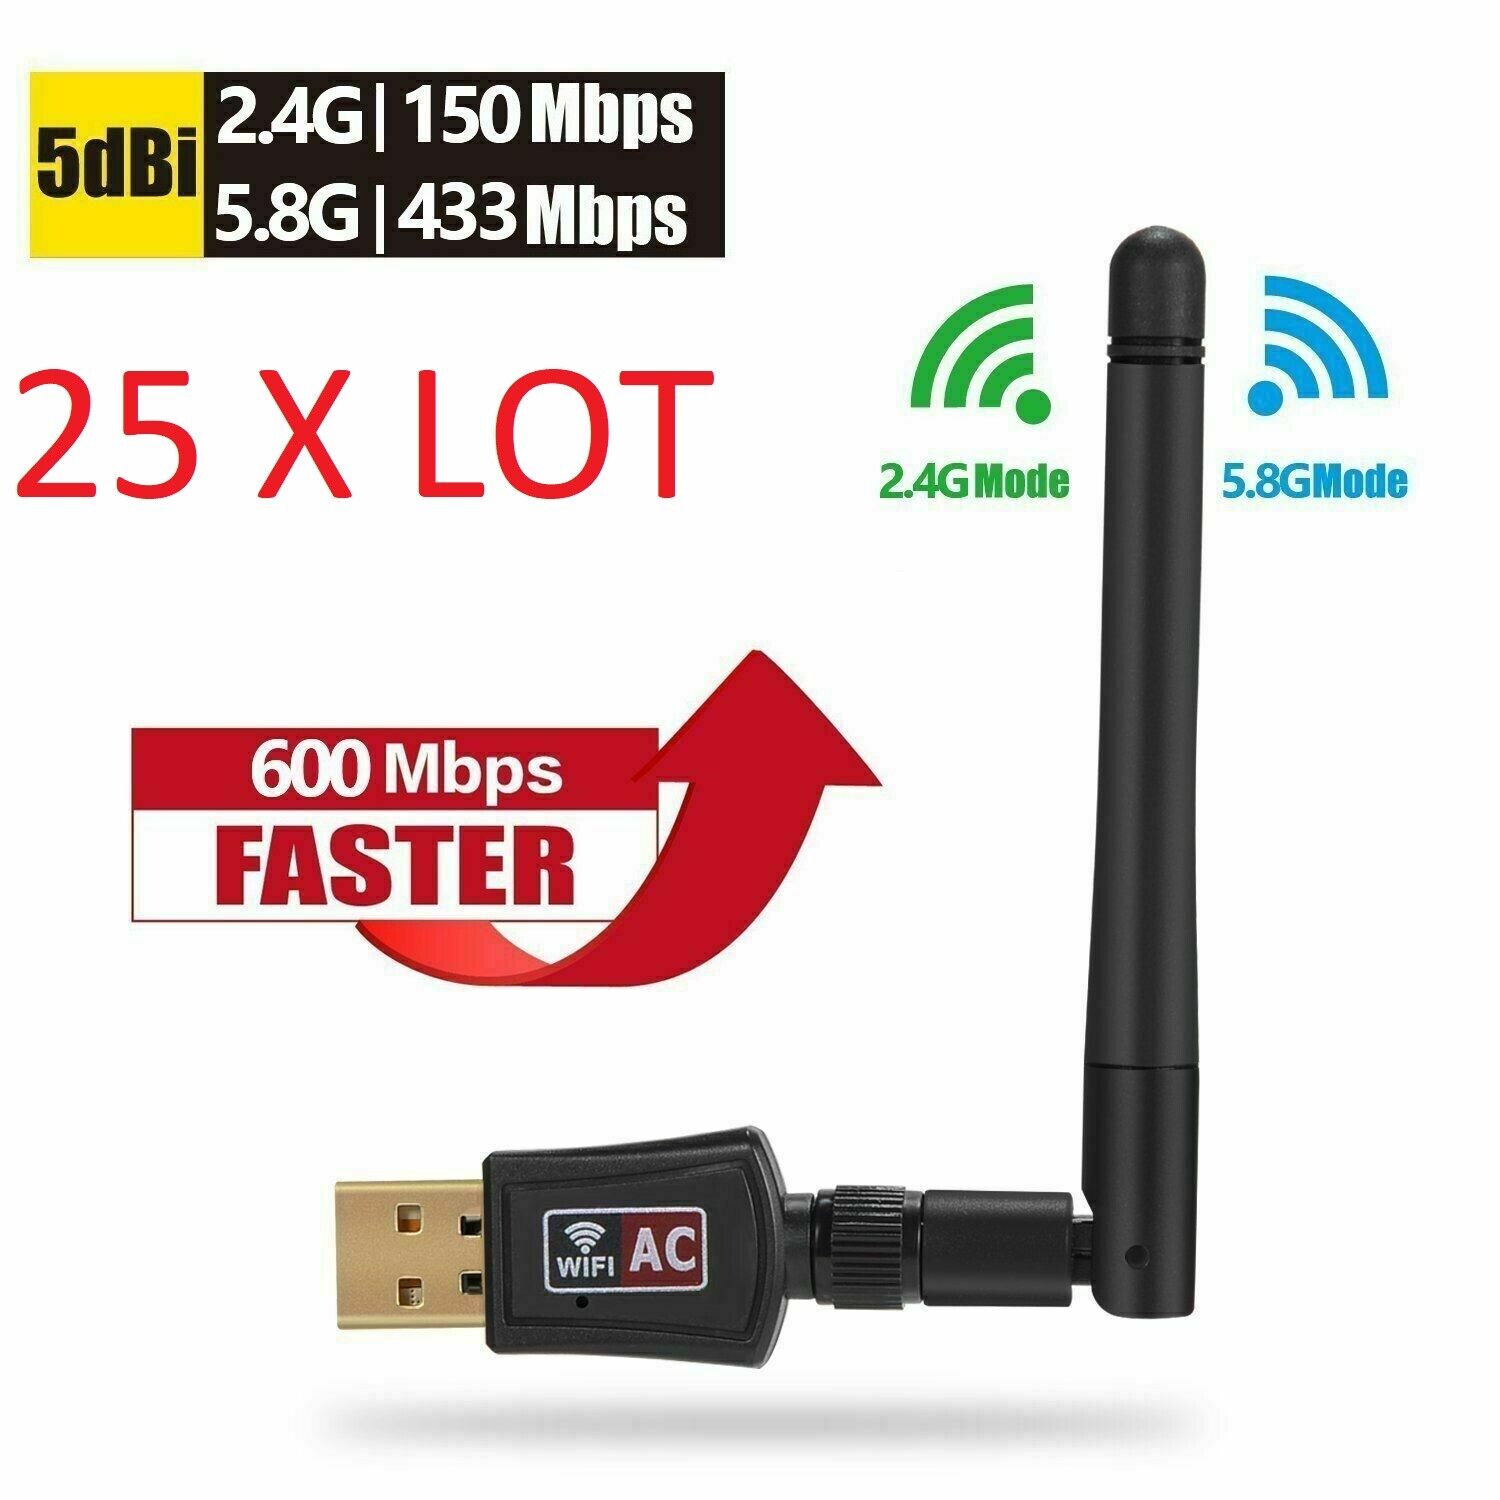 25X LOTAC600 Mbps Dual Band 2.4/5Ghz Wireless USB WiFi Network w/Antenna 802.11